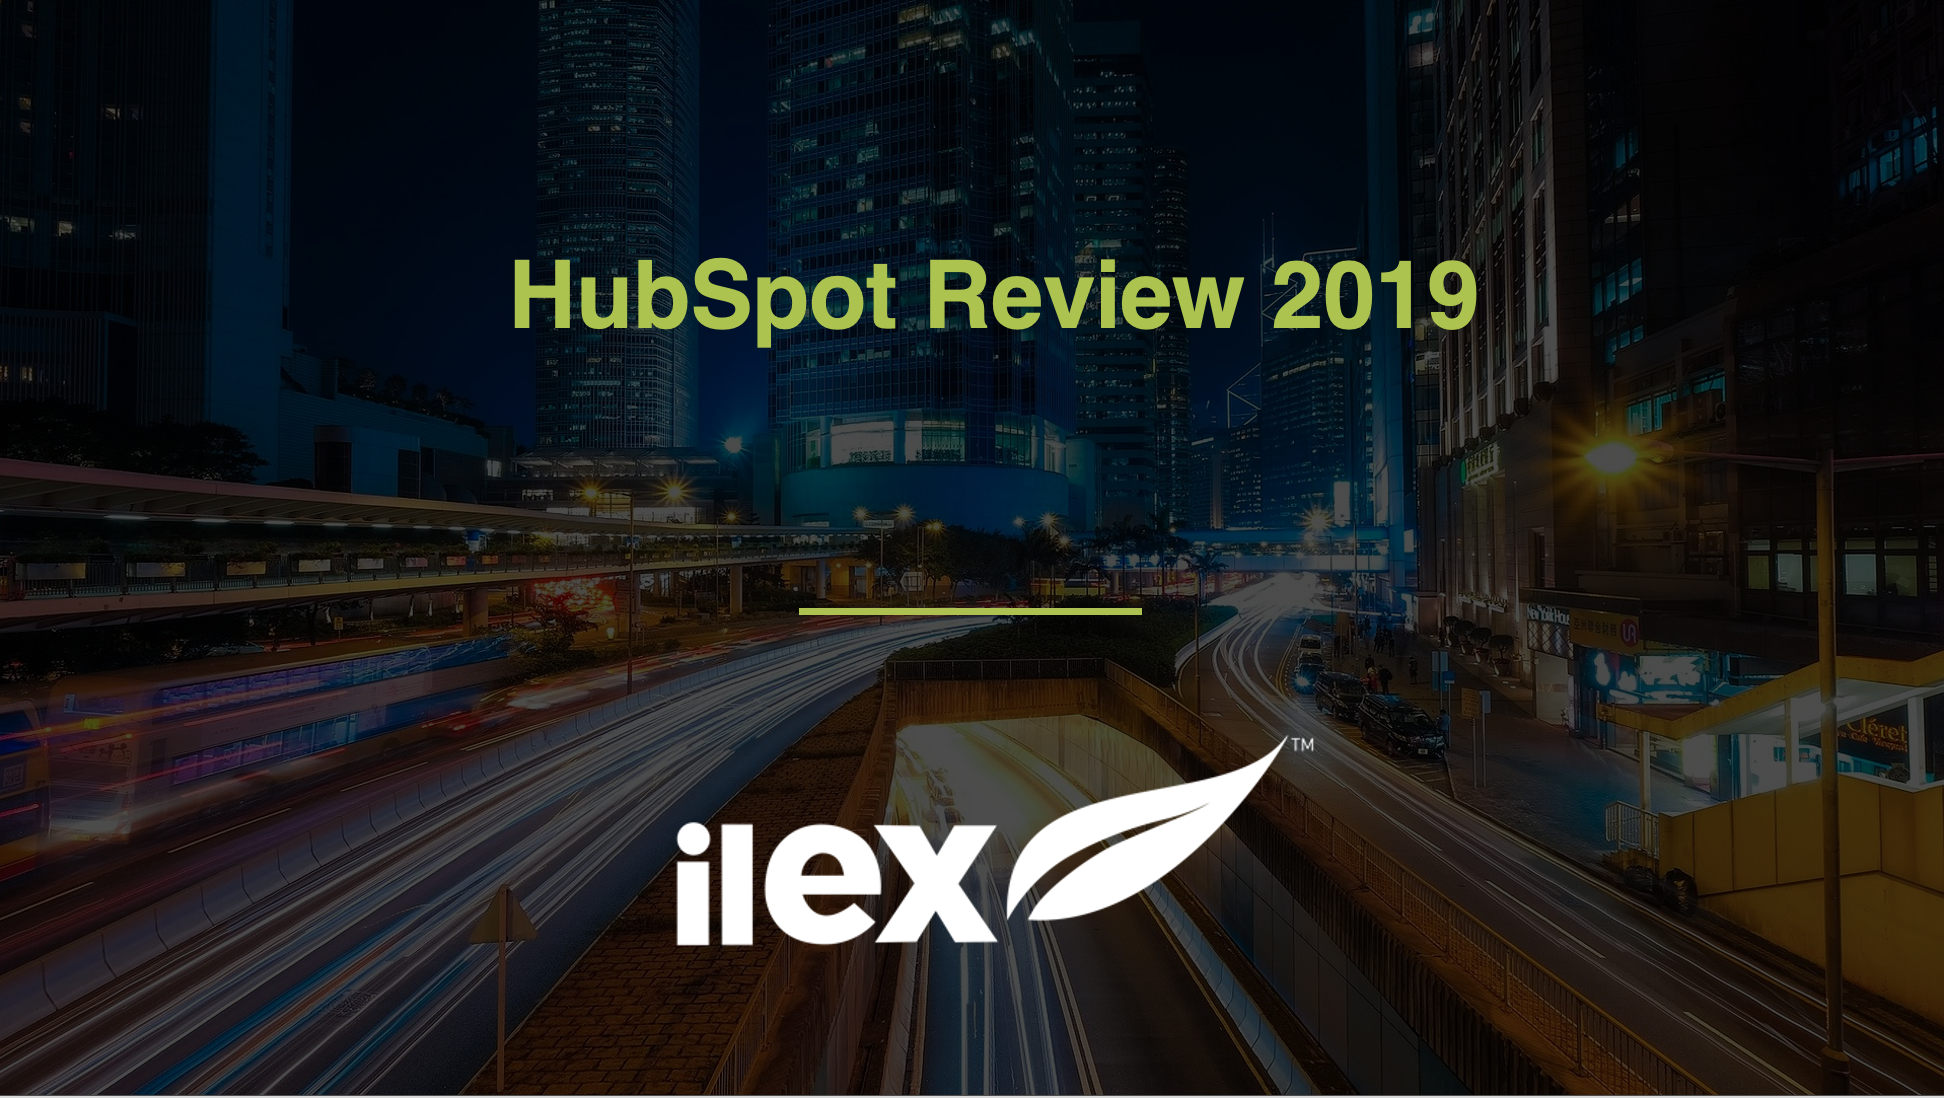 HubSpot Review 2019